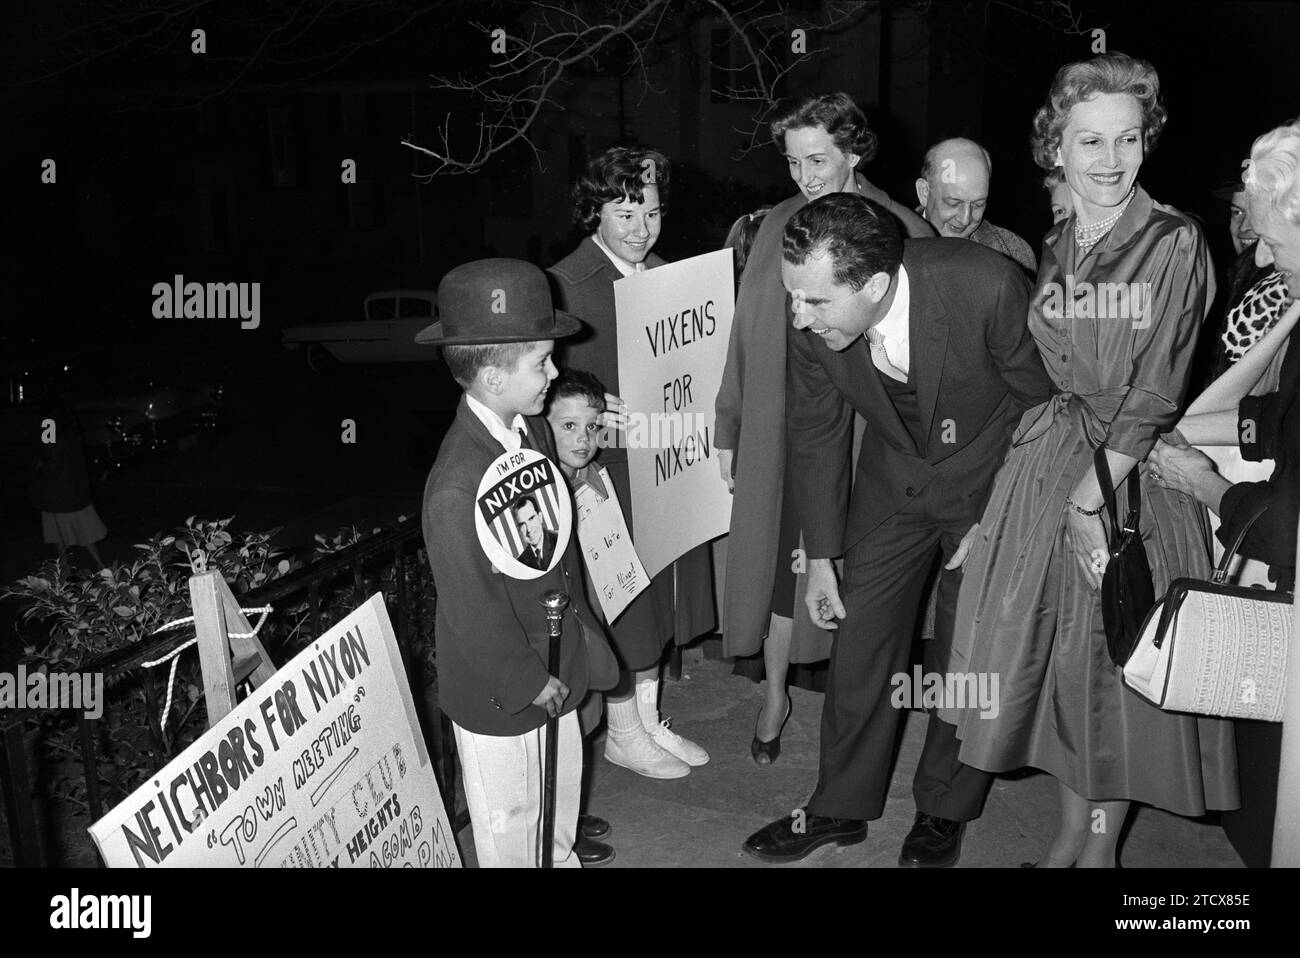 Le candidat à la présidence américaine Richard M. Nixon et son épouse Pat Nixon saluant les partisans, y compris les femmes et les enfants, en plein air, Warren K. Leffler, U.S. News & World Report Magazine Photography Collection, 11 avril 1960 Banque D'Images